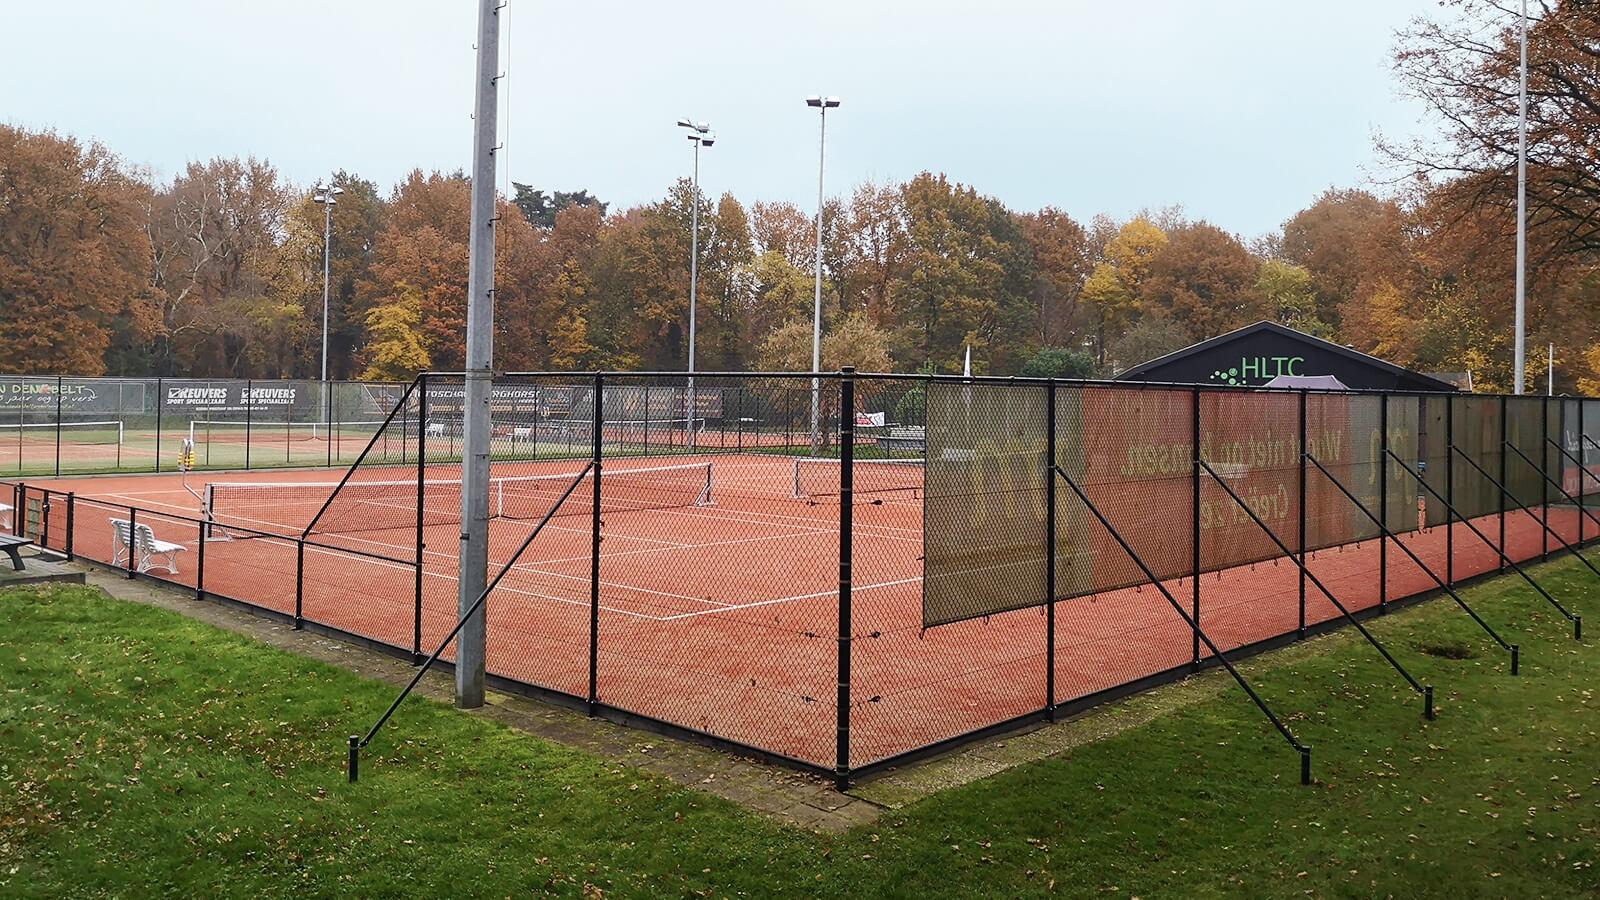 Tennisplatz-HLTC-ABC-hekwerk